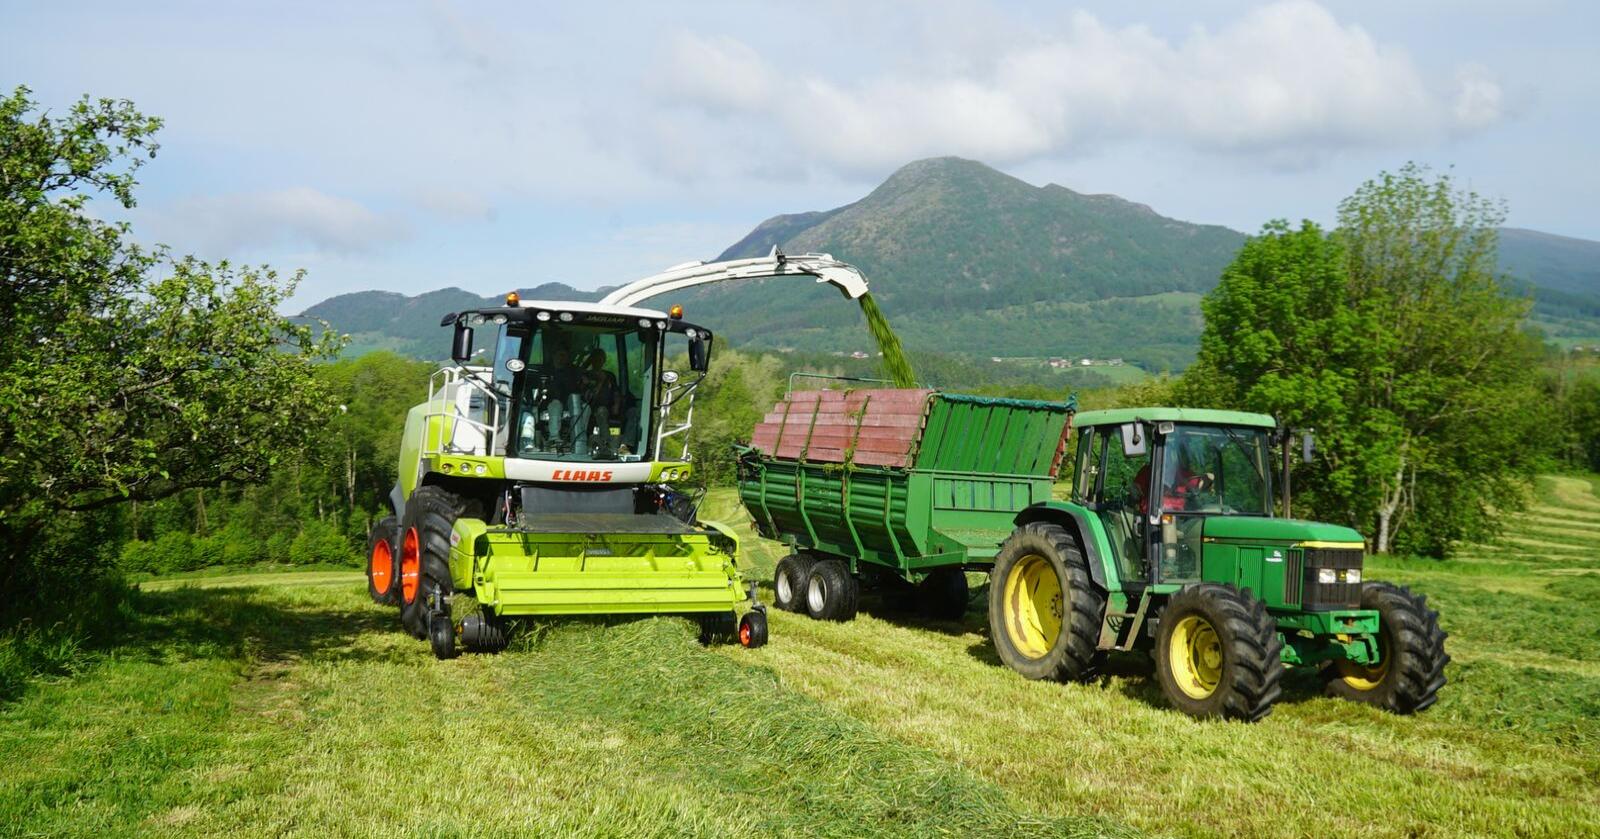 Sein og etterhvert tørr vår skaper utfordringer for grasavlingene noen steder i landet. Arkivfoto: Traktor